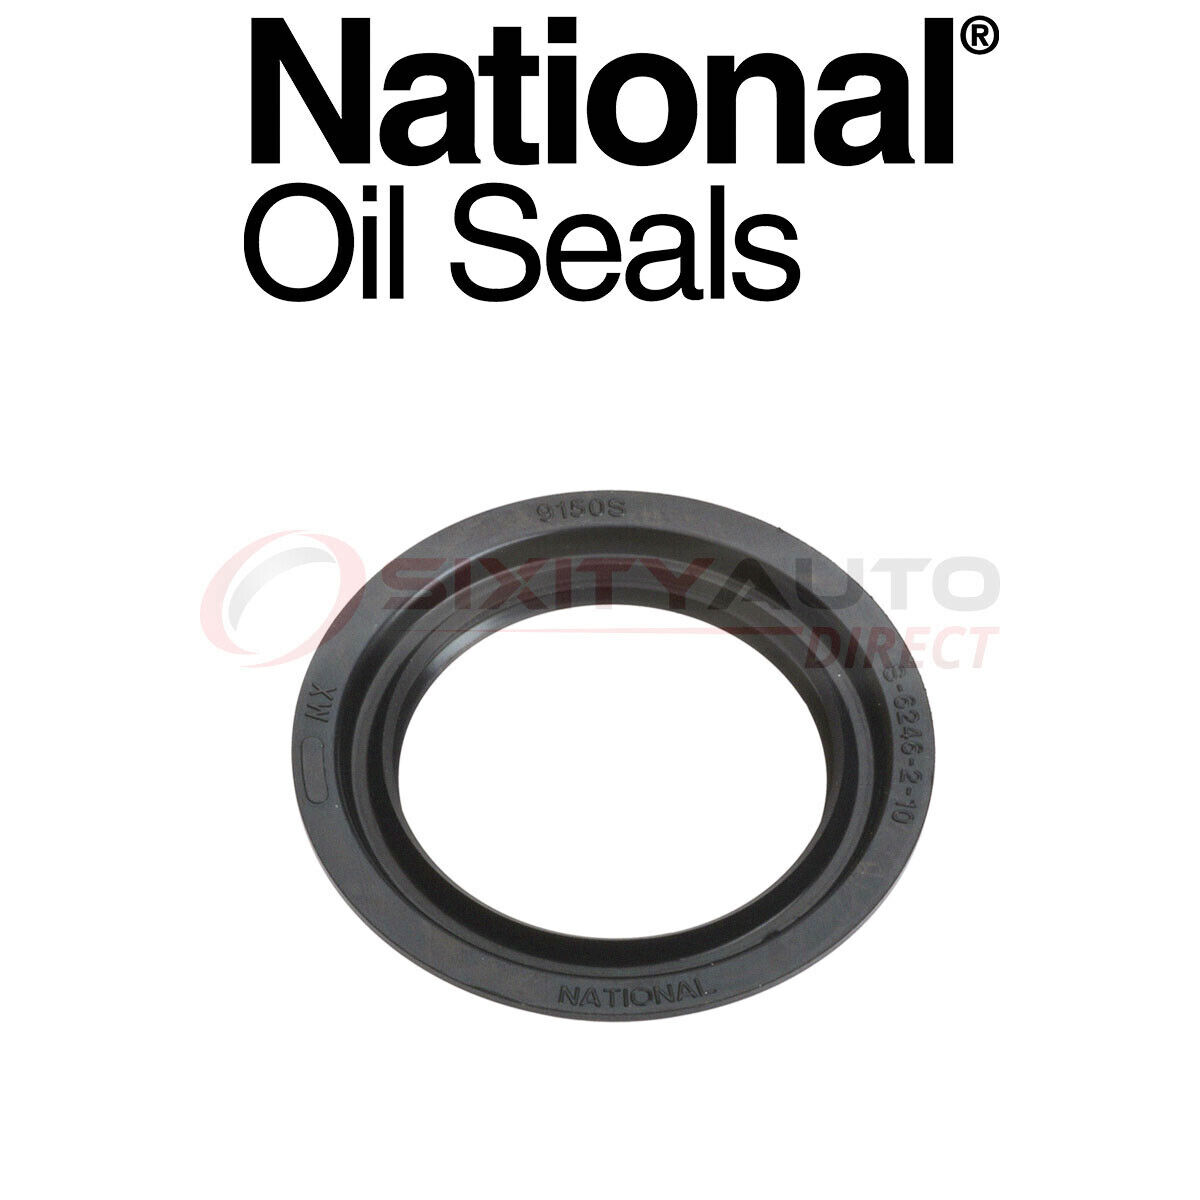 National Wheel Seal for 1995-2007 Mazda B3000 3.0L V6 - Axle Hub Tire lj